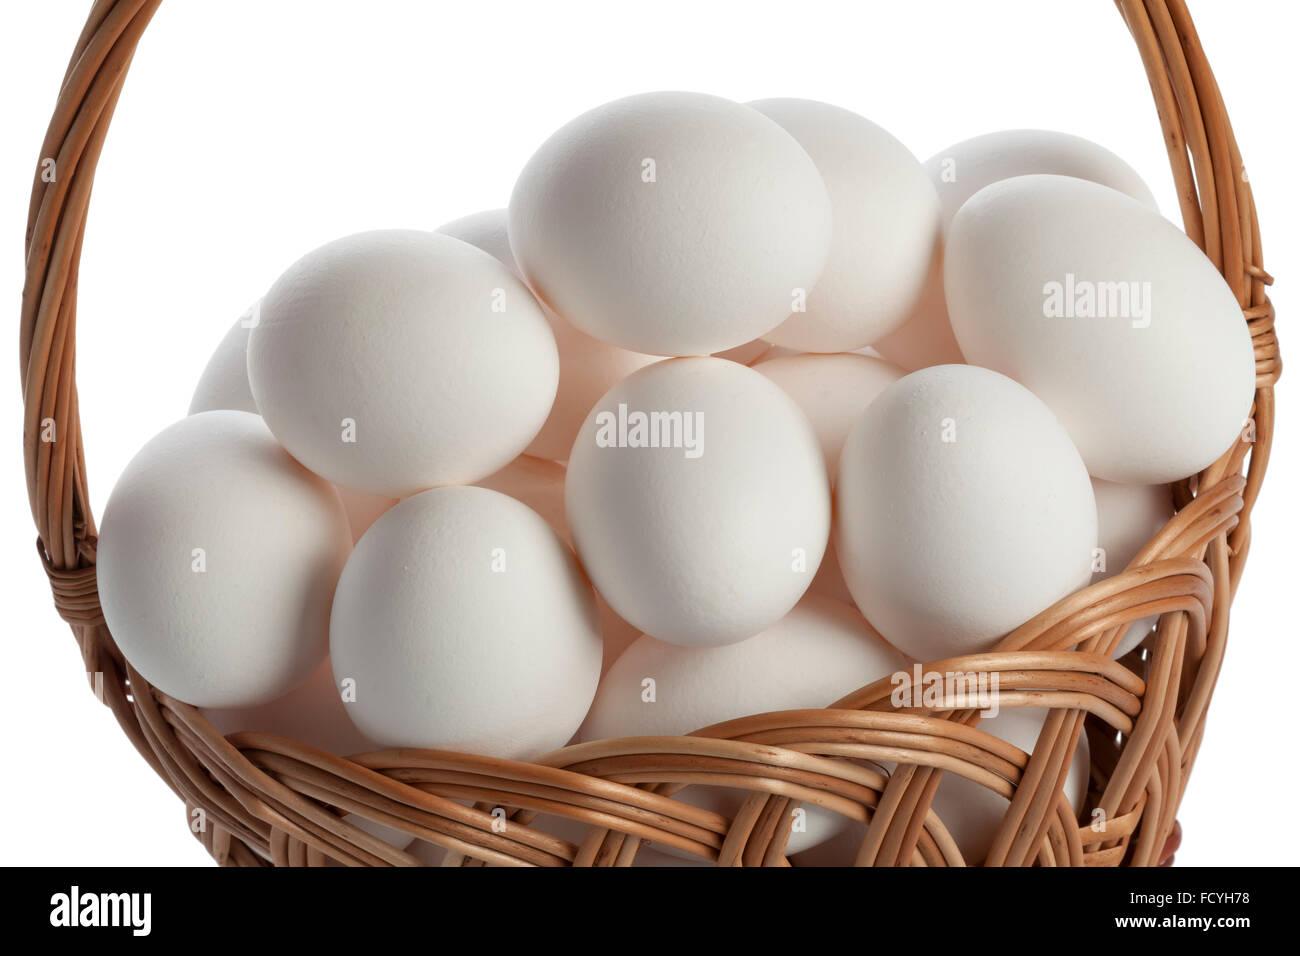 Basket with fresh white eggs Stock Photo